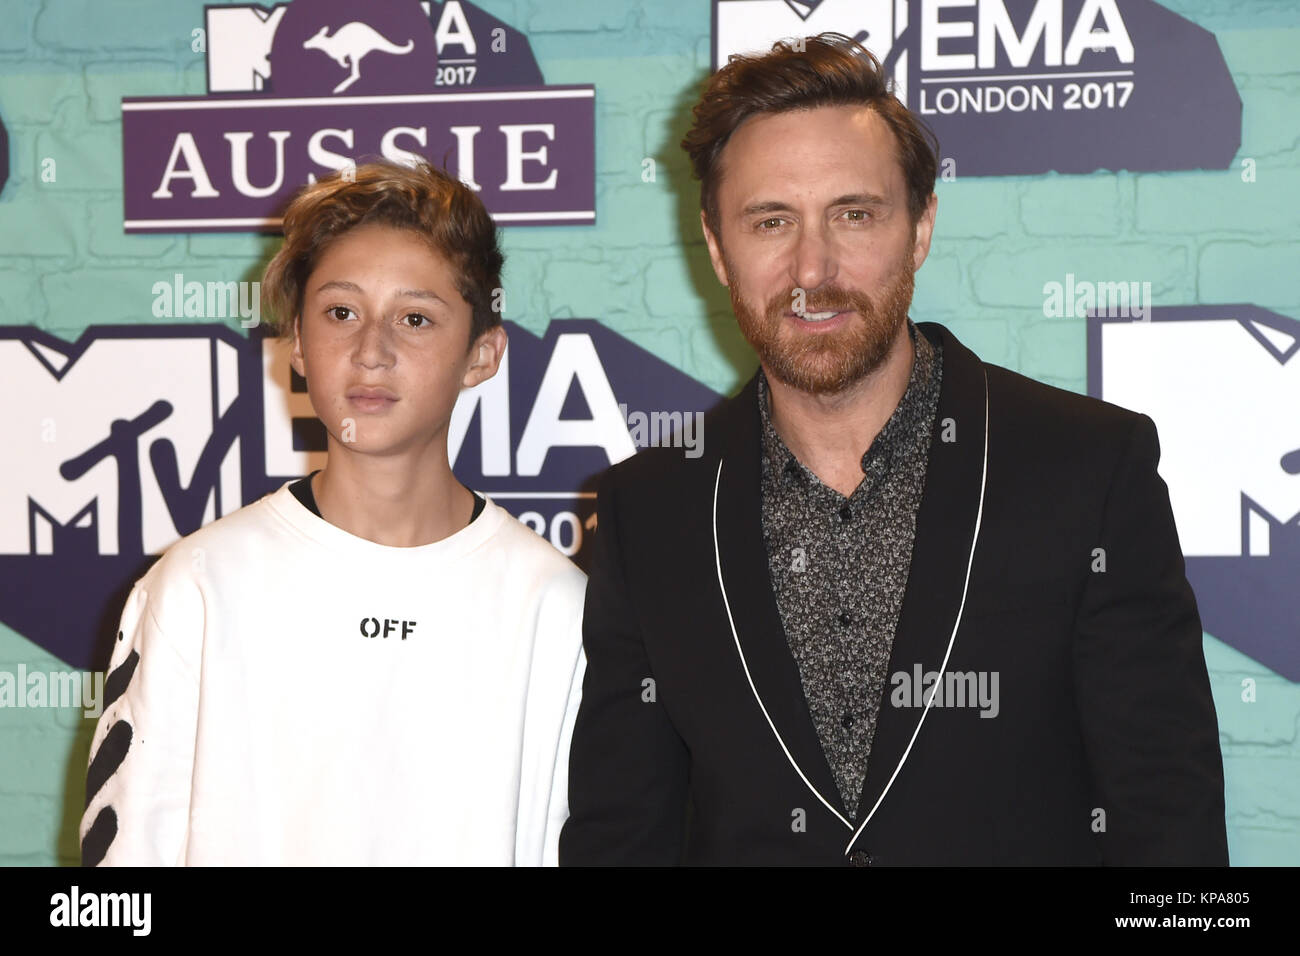 2017 MTV Europe Music Awards (EMAS) - Arrivées avec : David Guetta avec son fils où Elvis : London, Royaume-Uni Quand : 12 novembre 2017 Source : WENN.com **Uniquement disponible pour publication au Royaume-Uni, USA, Allemagne, Autriche, Suisse** Banque D'Images